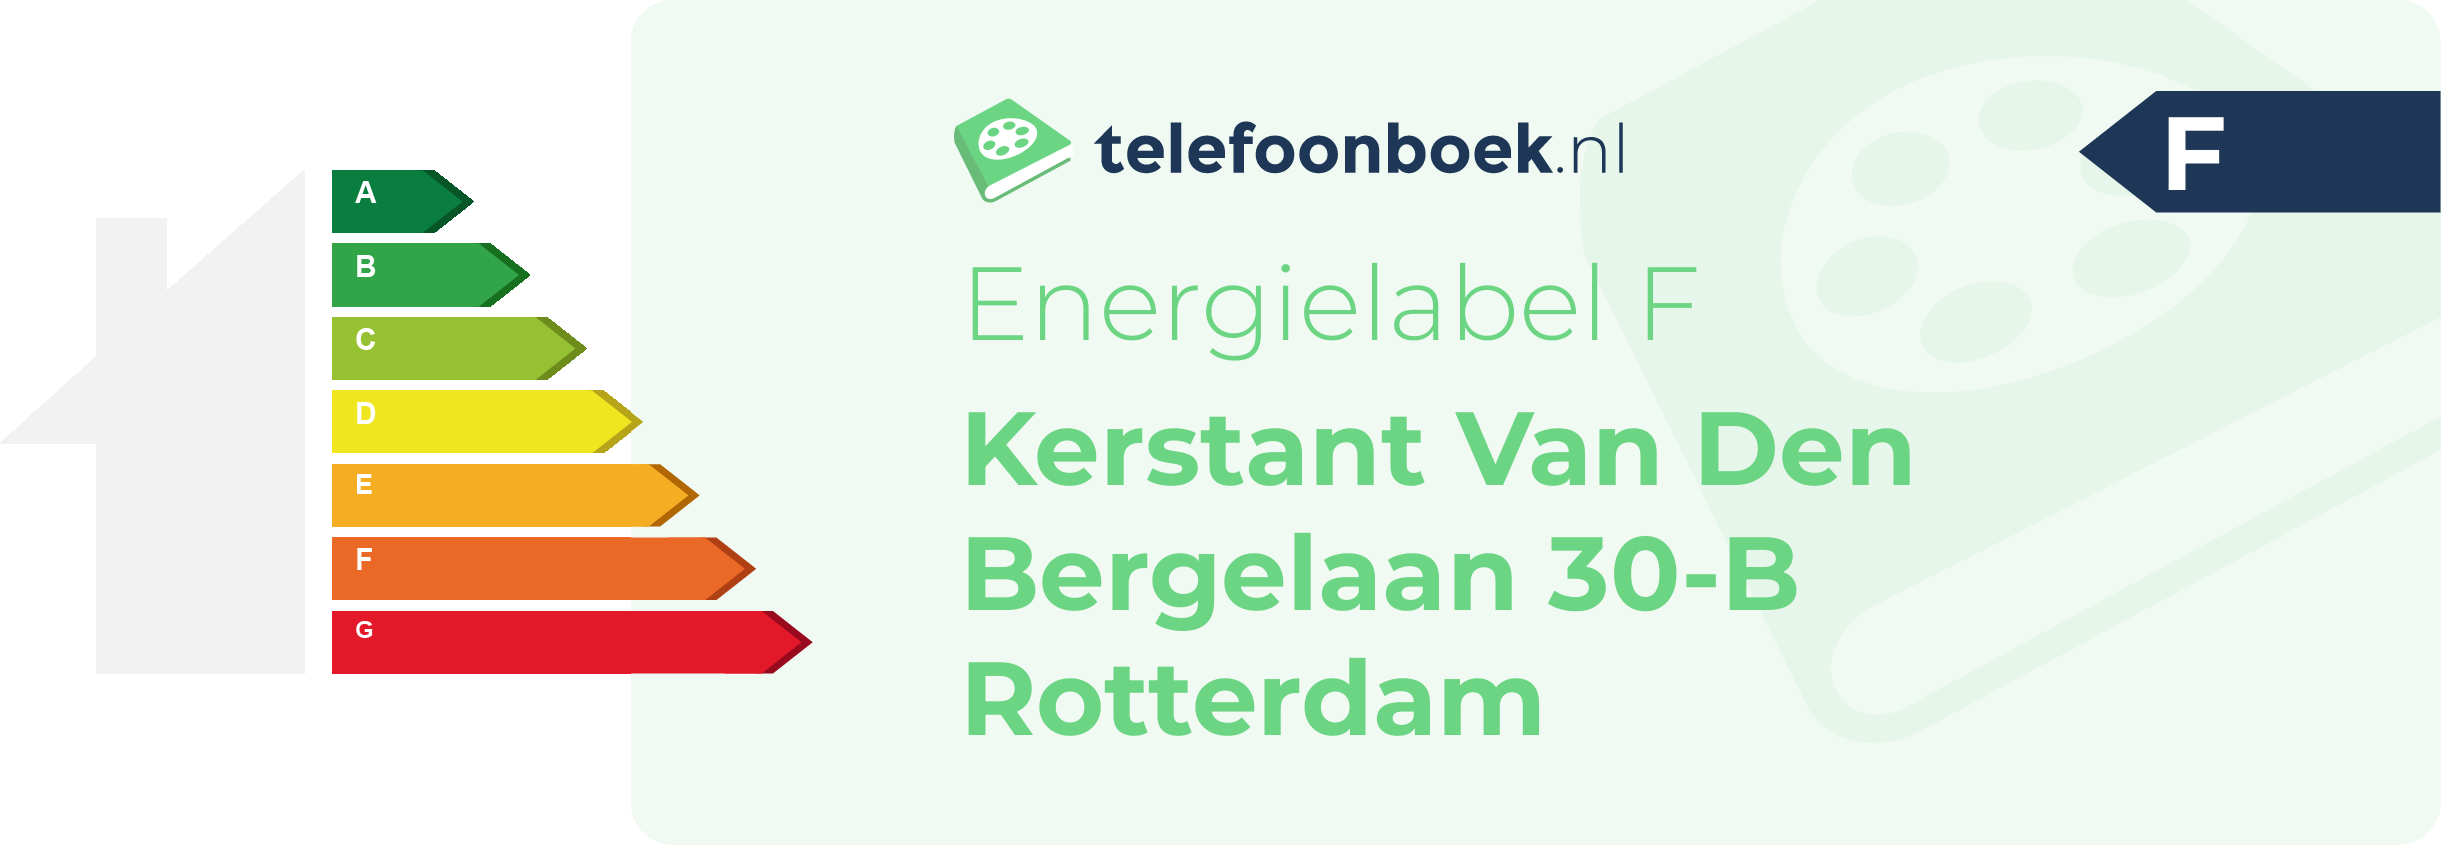 Energielabel Kerstant Van Den Bergelaan 30-B Rotterdam